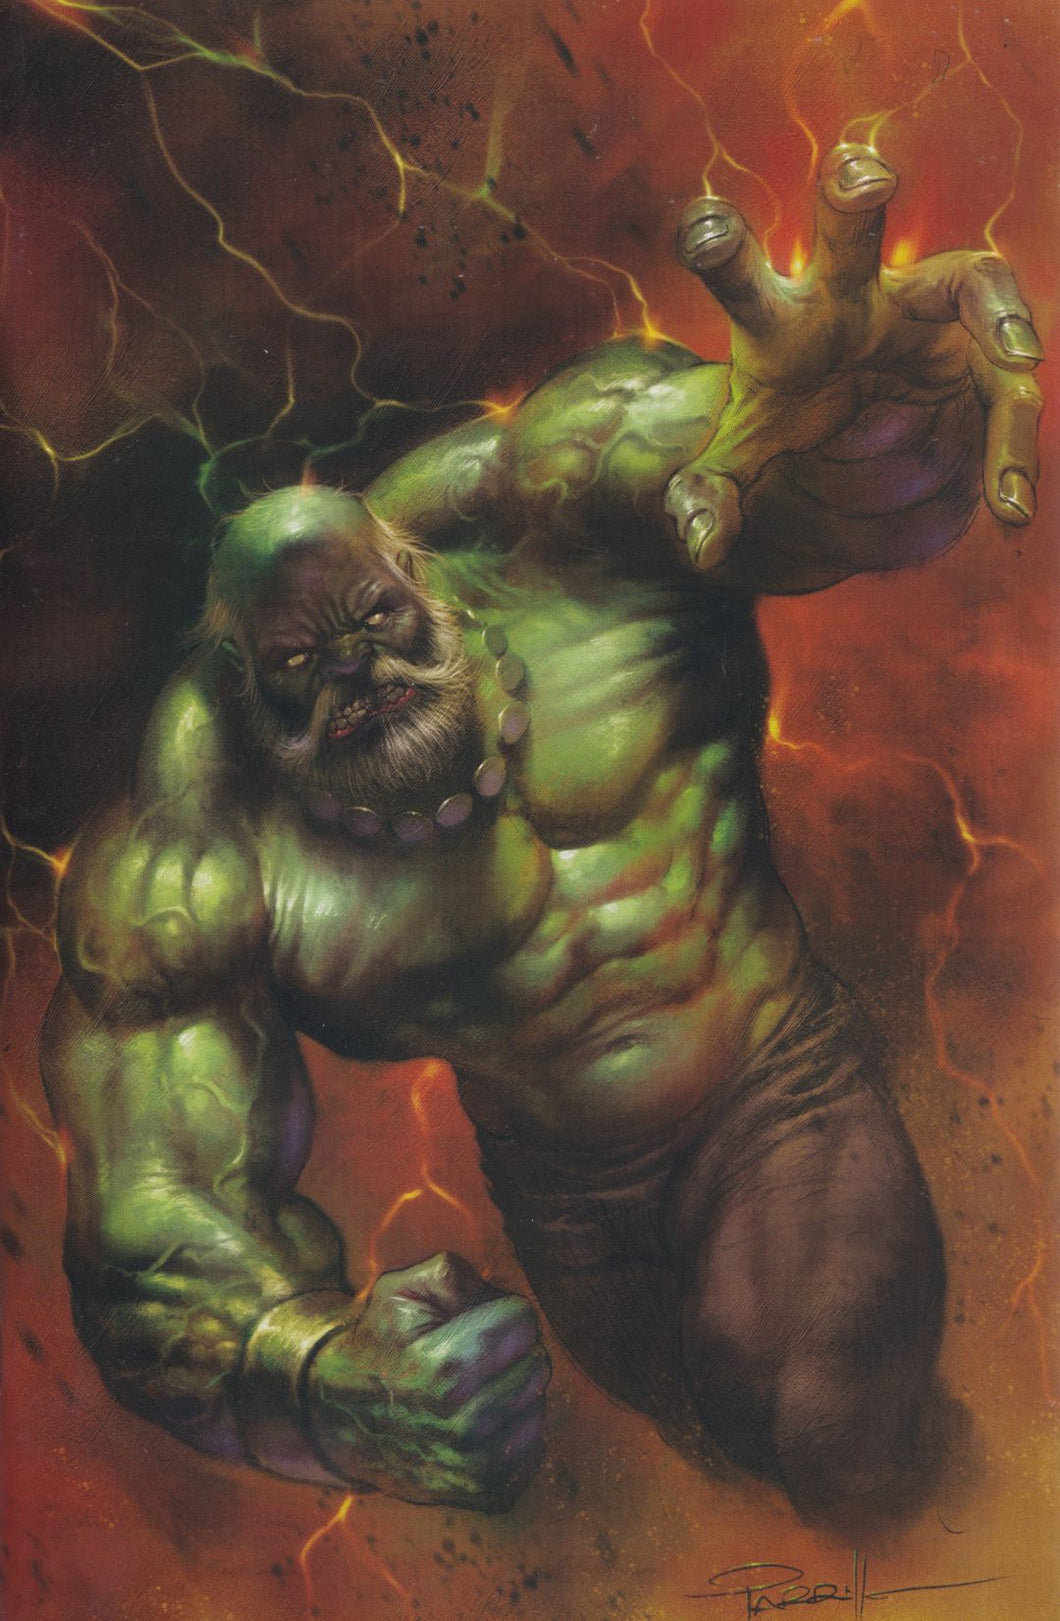 MAESTRO #1 (LUCIO PARRILLO EXCLUSIVE VIRGIN VARIANT) Comic Book ~ Marvel Hulk